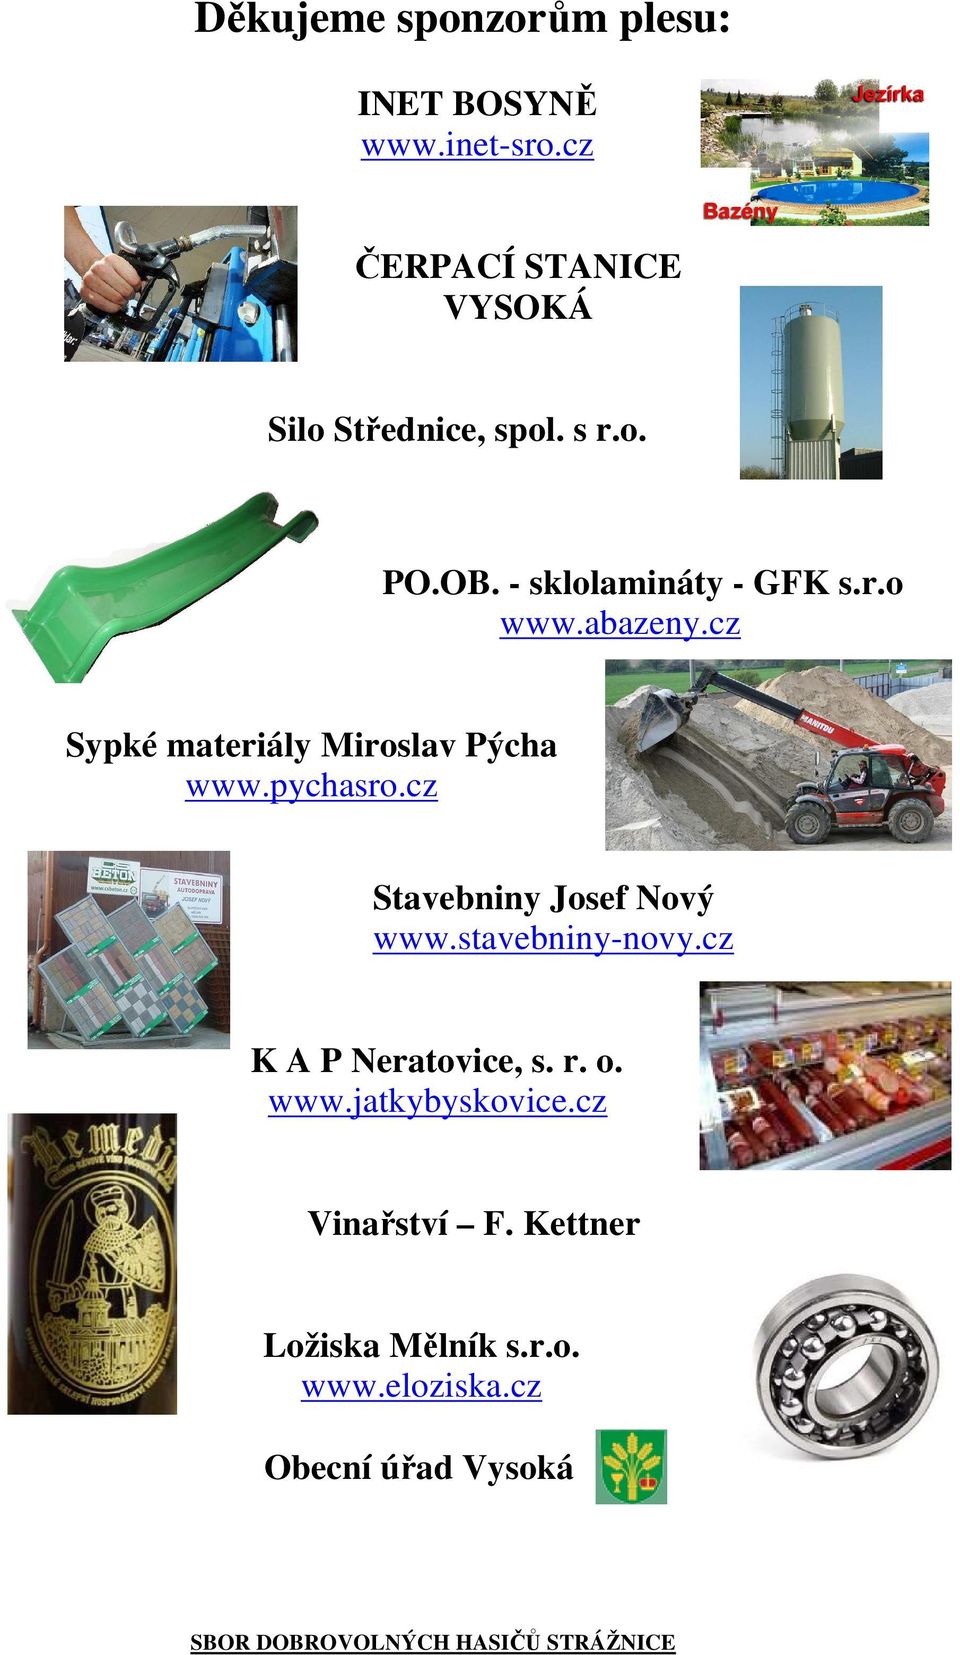 abazeny.cz Sypké materiály Miroslav Pýcha www.pychasro.cz Stavebniny Josef Nový www.